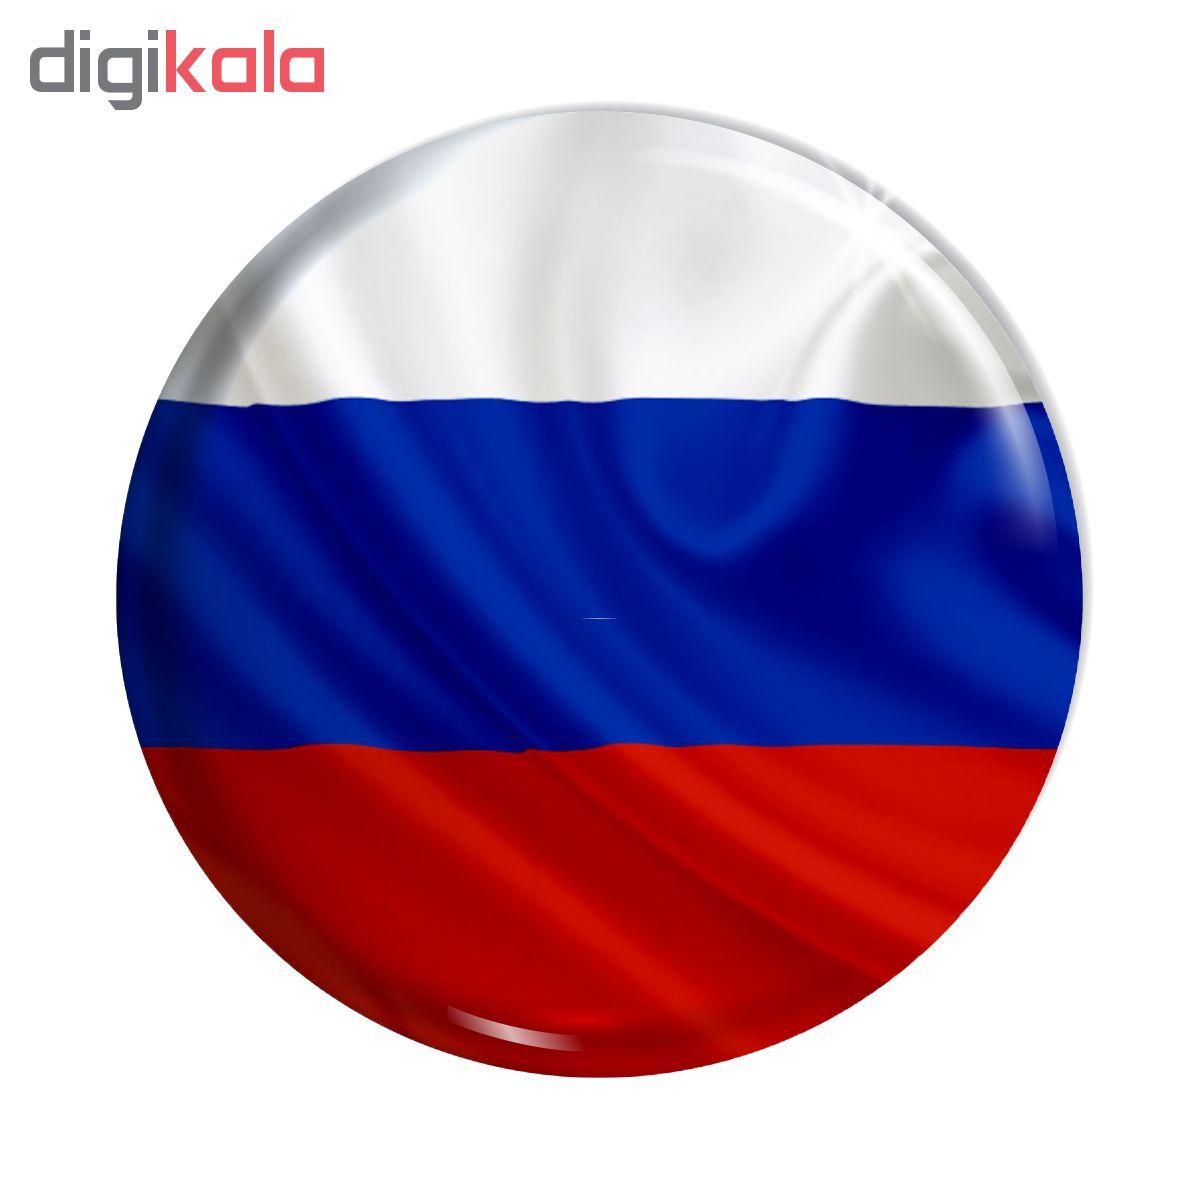 Аватар с российским флагом